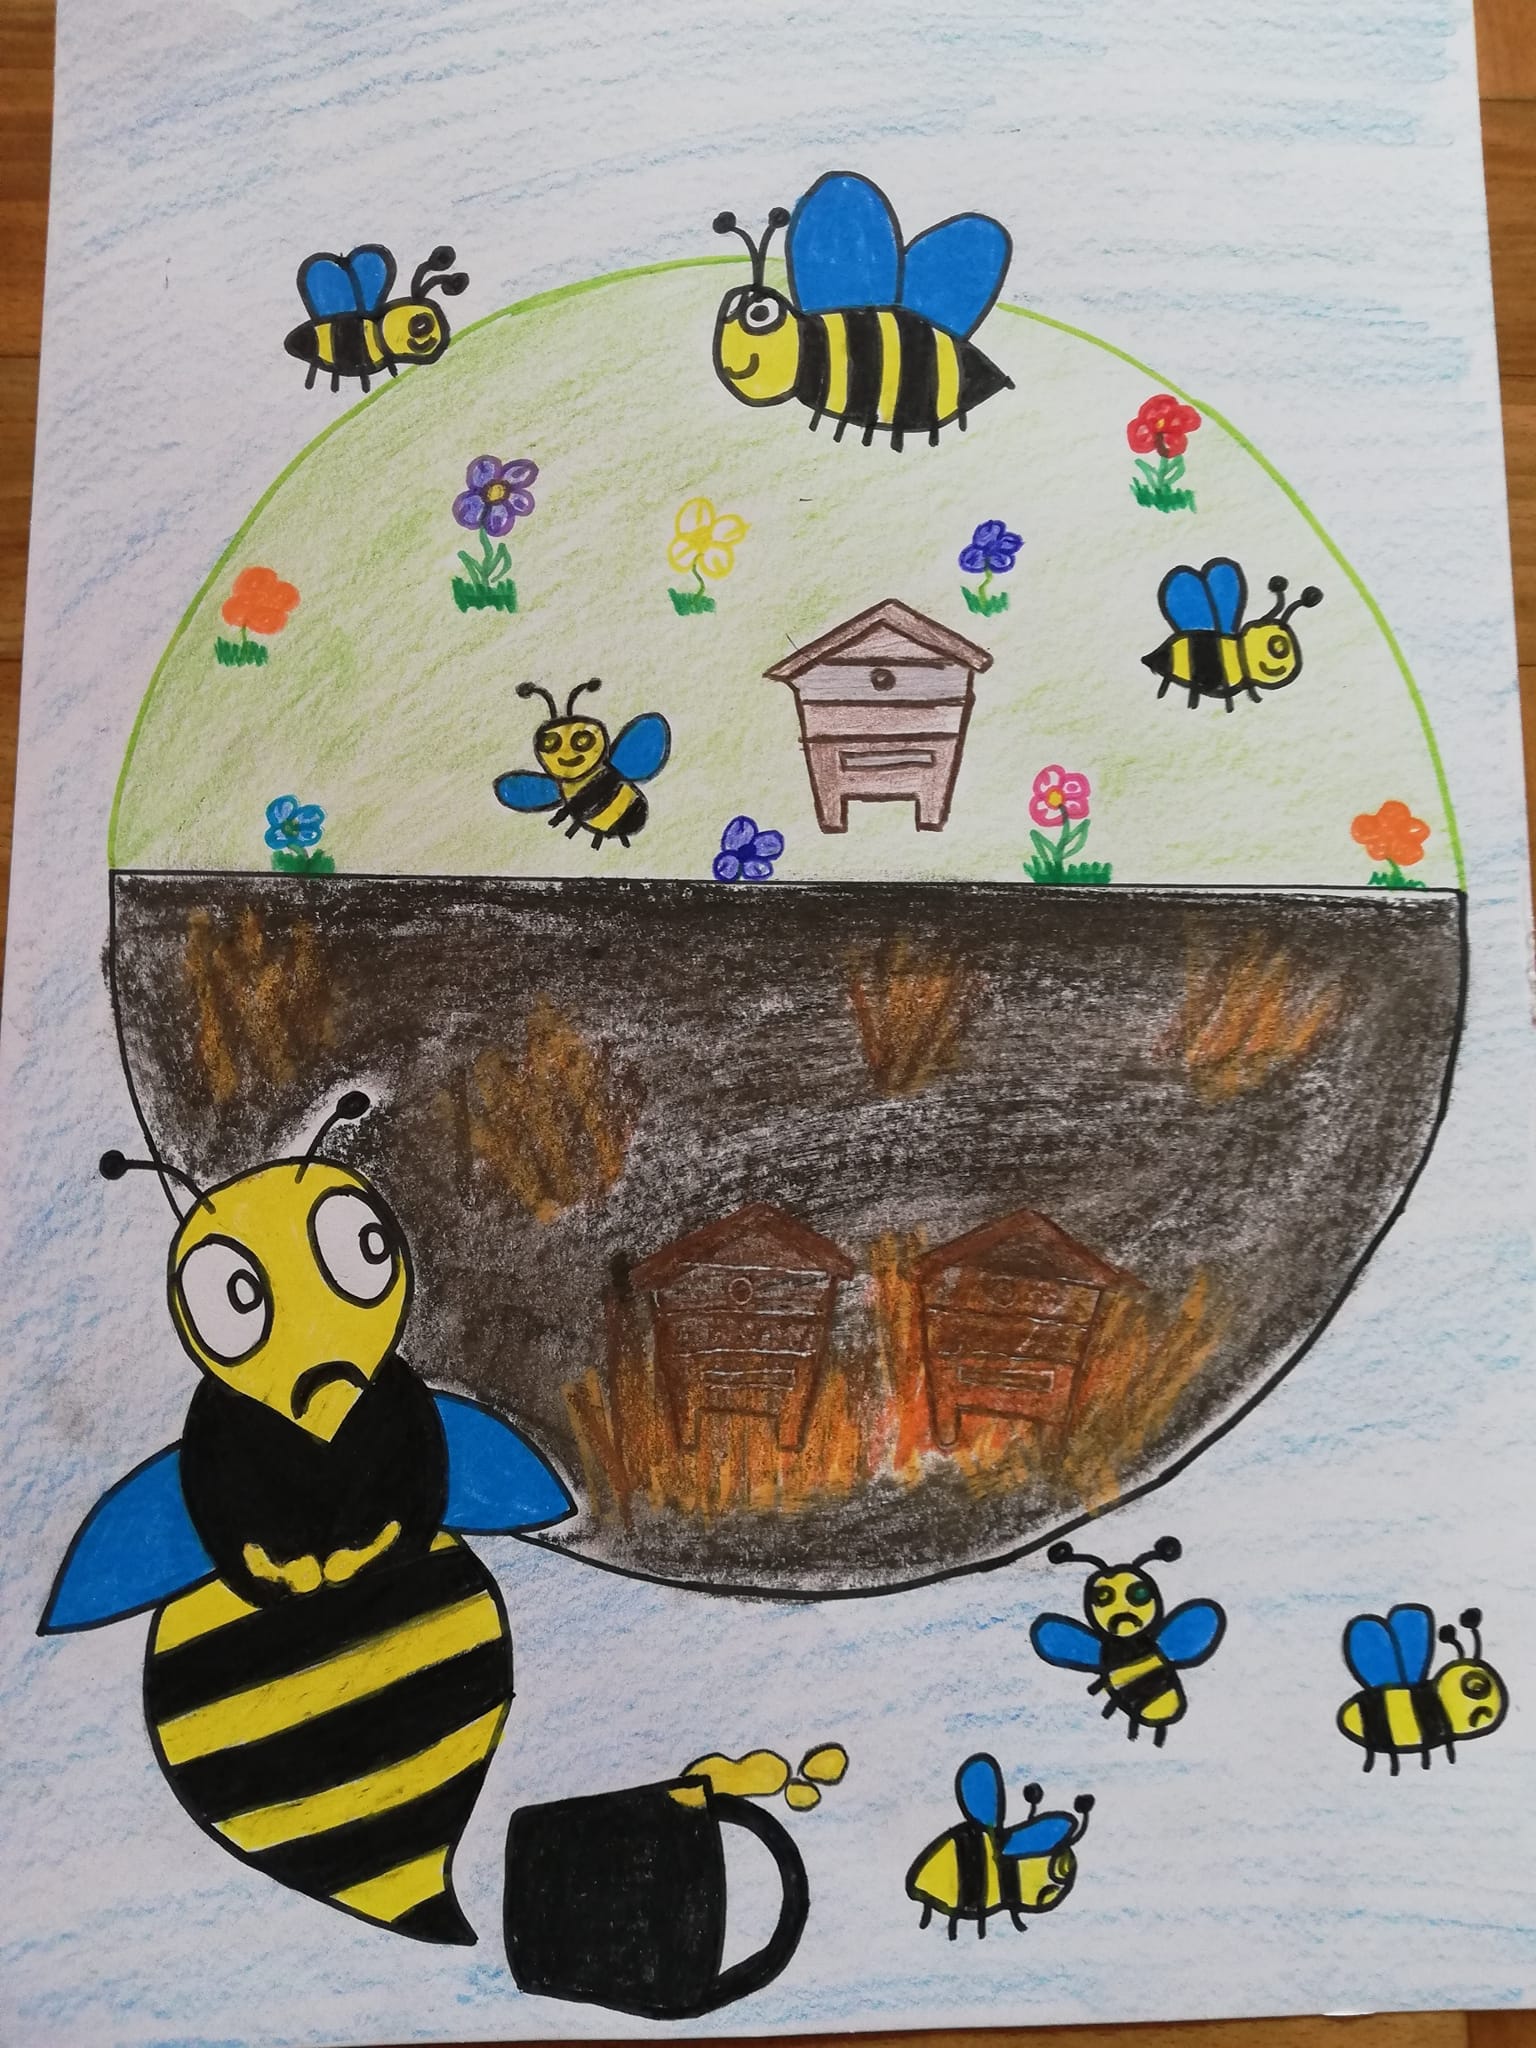 Praca plastyczna wymownie pokazująca dwie wersje świata z pszczołami i bez